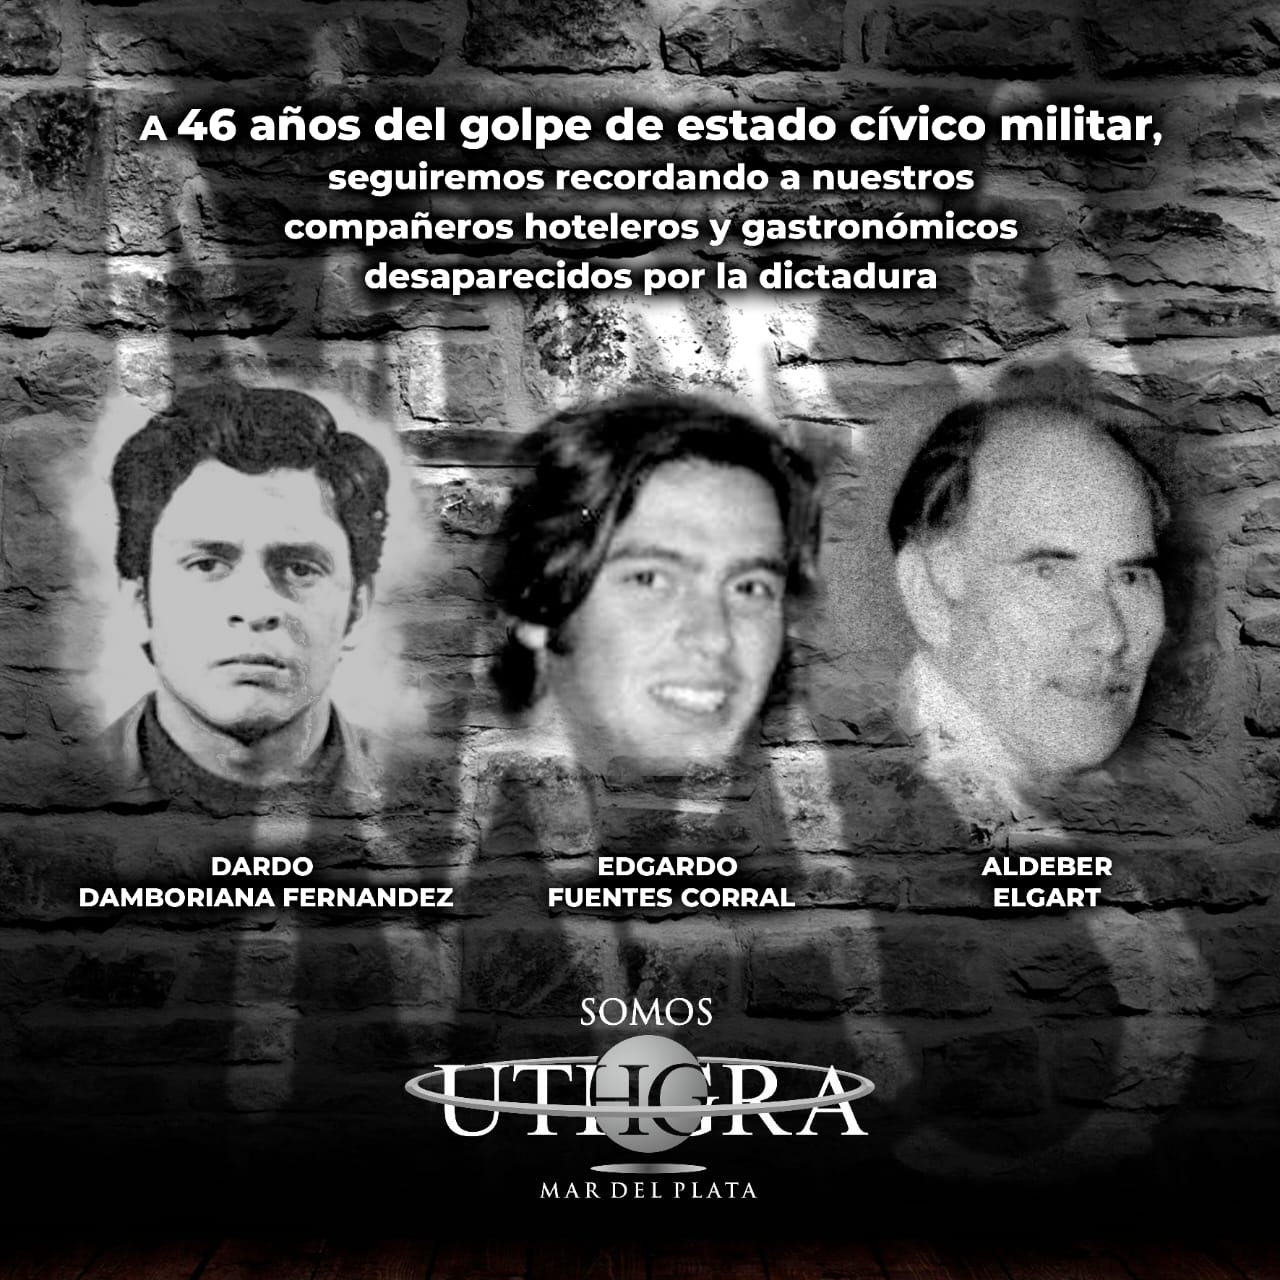 UTHGRA recuerda a trabajadores hoteleros y gastronómicos desaparecidos